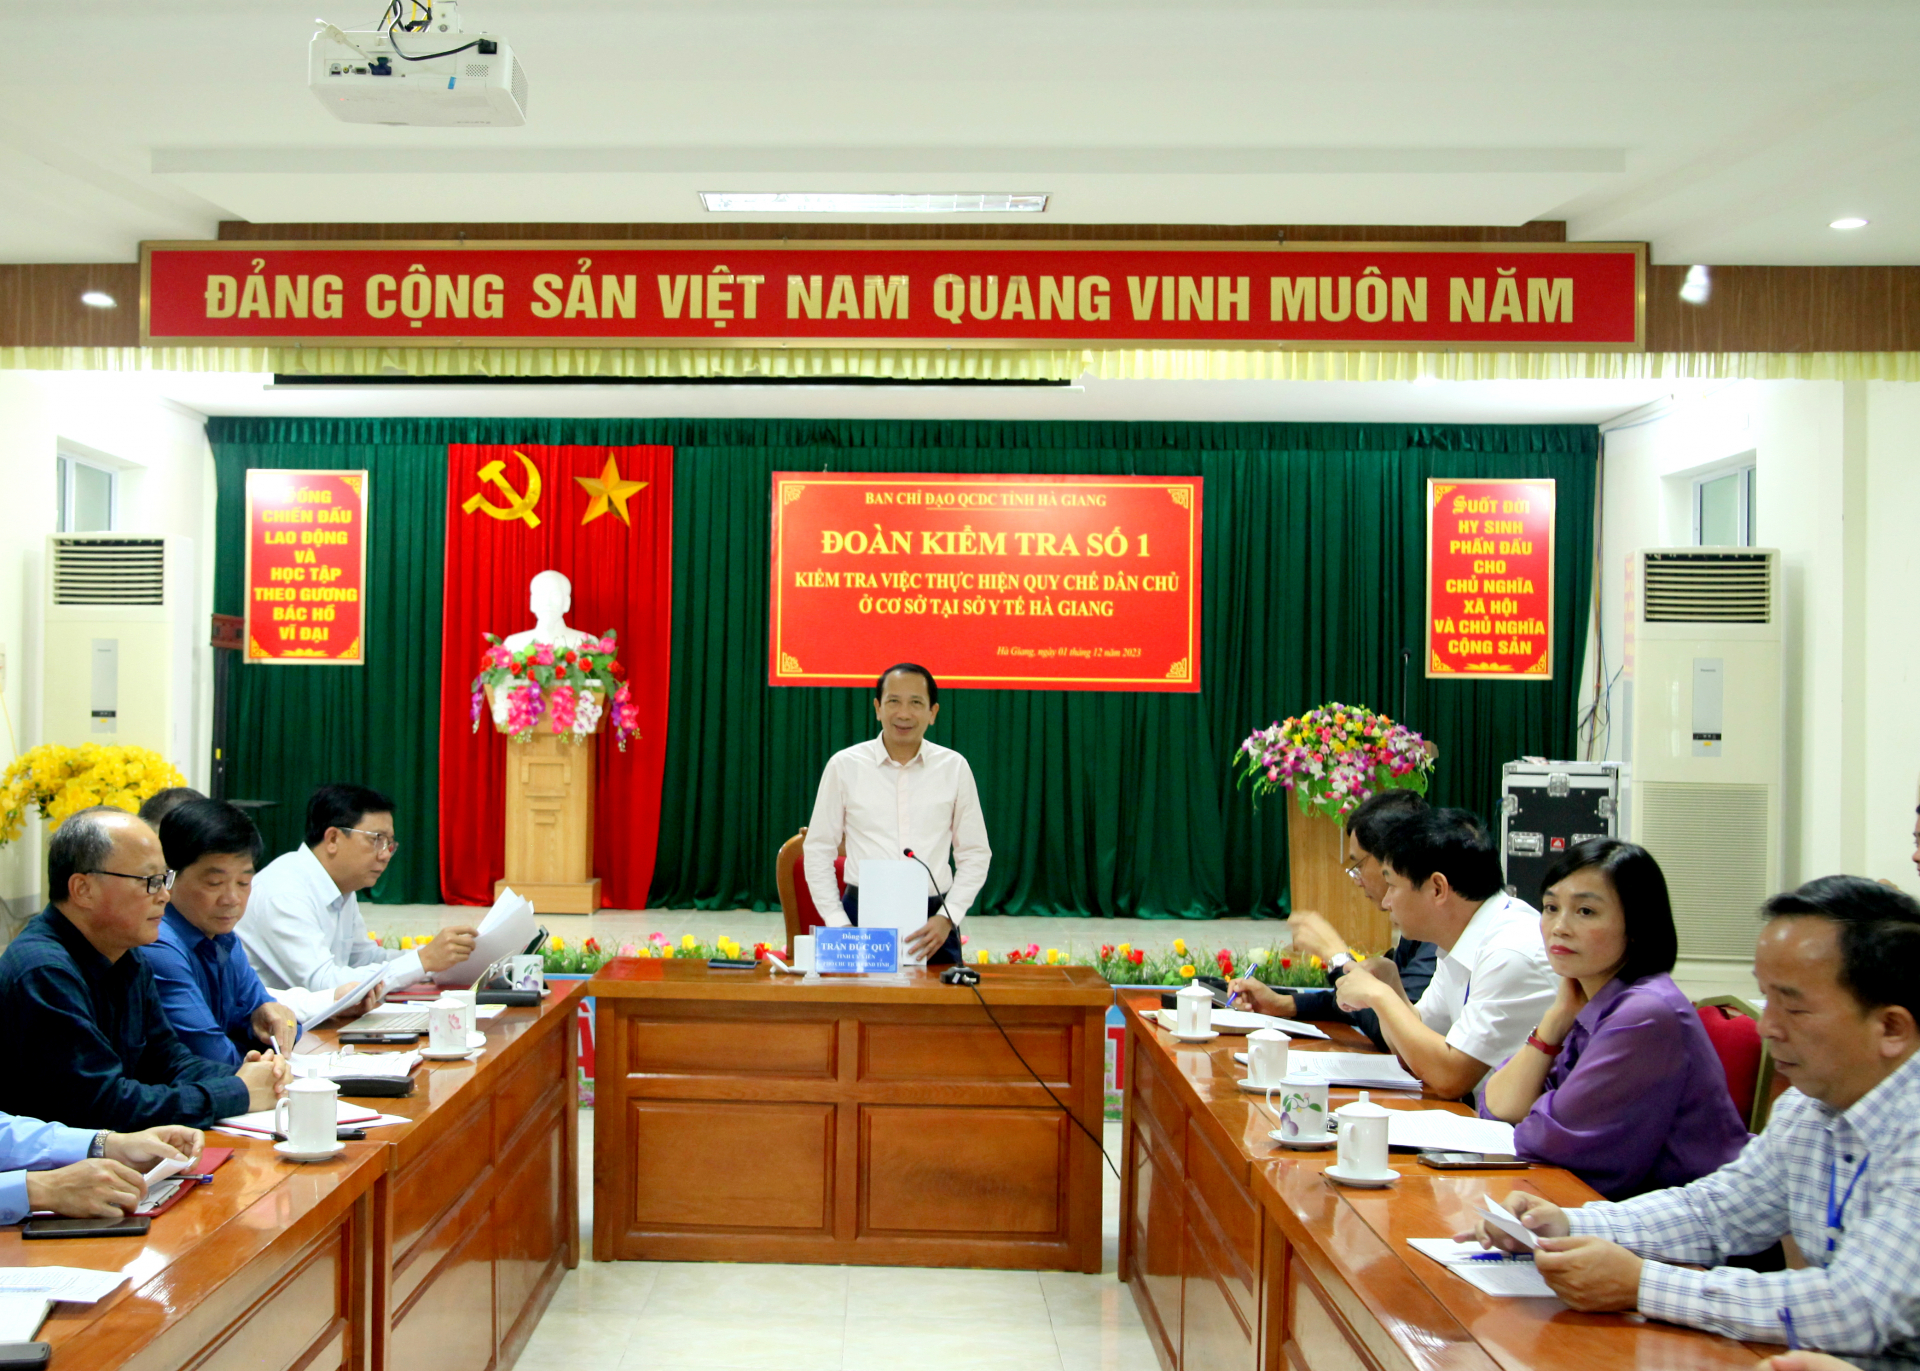 Phó Chủ tịch UBND tỉnh Trần Đức Quý phát biểu kết luận buổi làm việc tại Sở Y tế.
